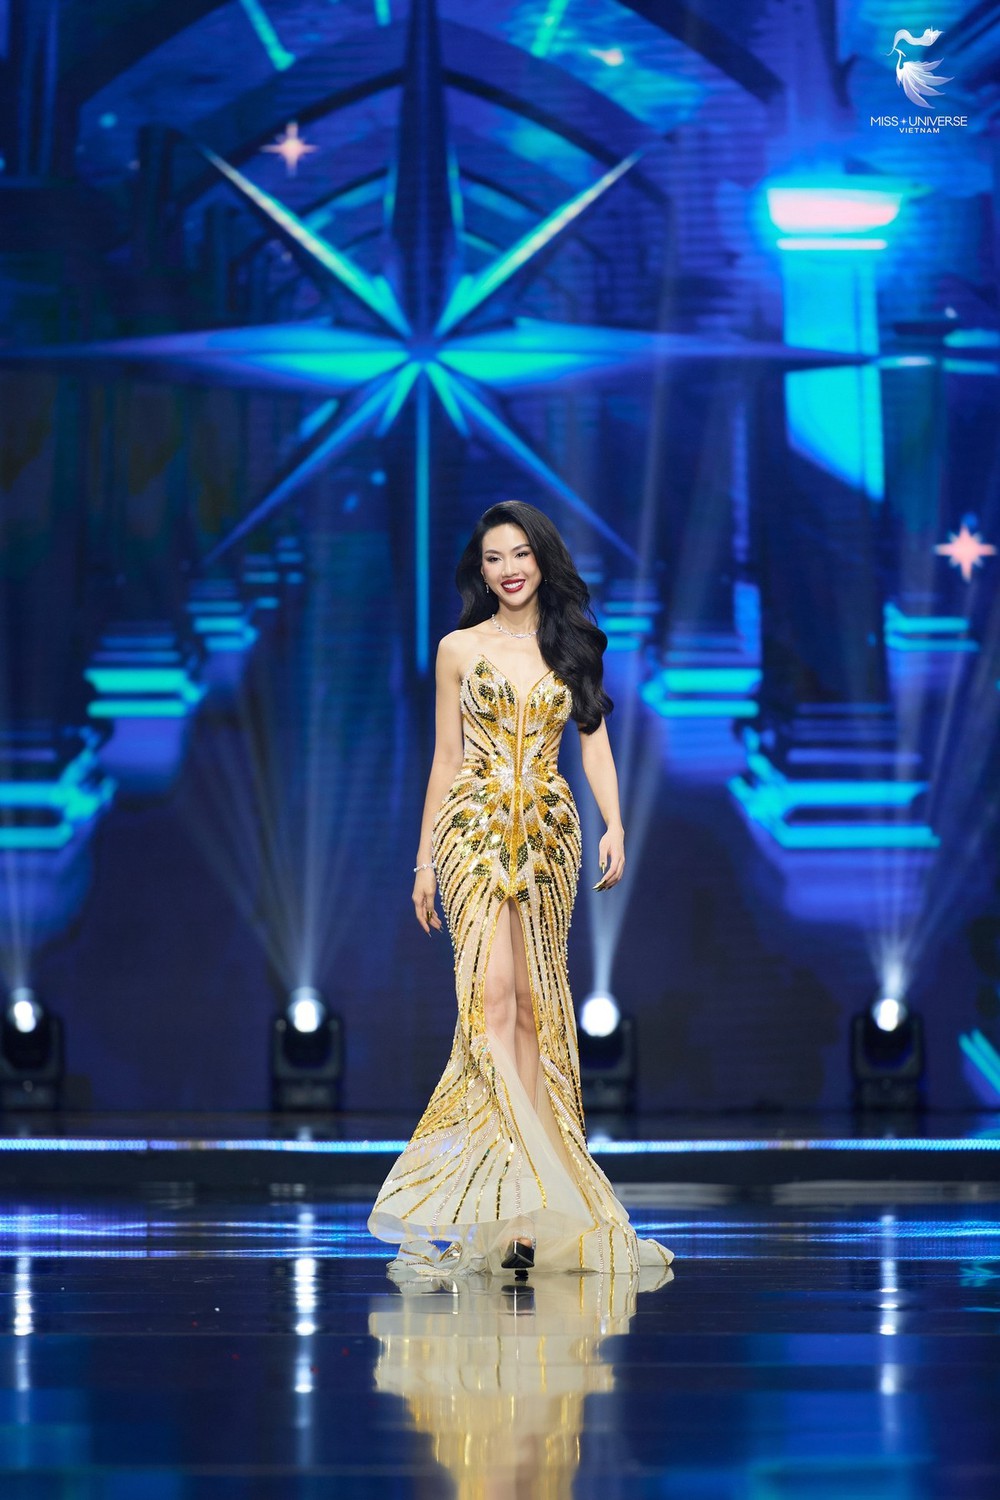 Hoa hậu Bùi Quỳnh Hoa giải thích câu nói ‘Thắng không kiêu, bại không chảnh’, khán giả chê vụng về - Ảnh 2.